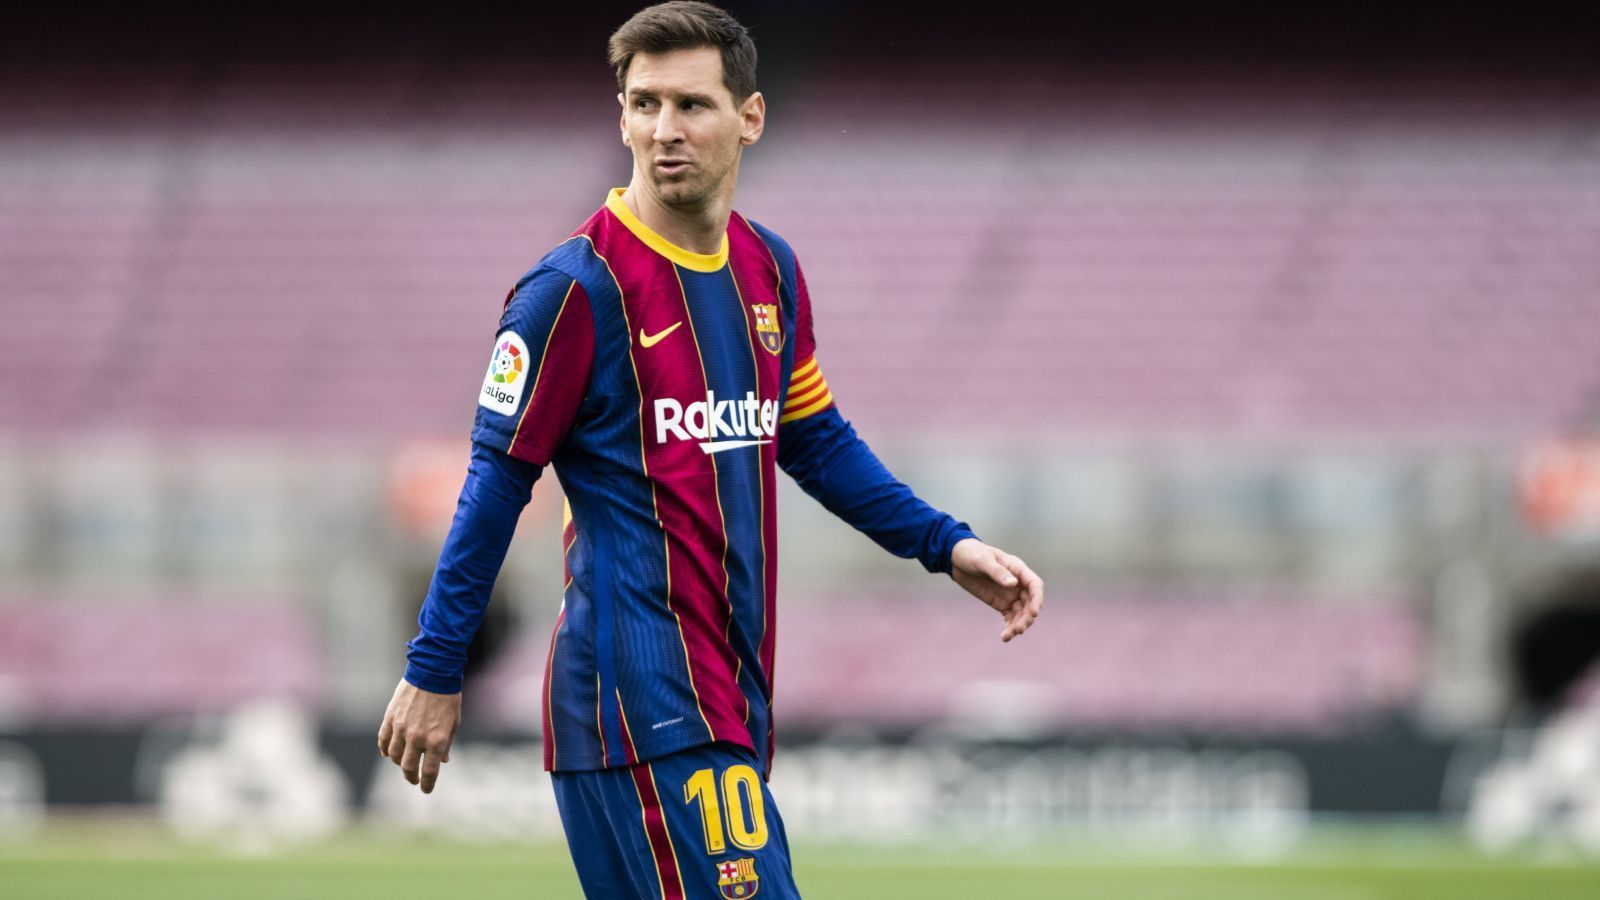 
                <strong>Die großartige Karriere des Lionel Messi</strong><br>
                Schock-Nachricht für den FC Barcelona! Aus finanziellen Gründen können die Katalanen Lionel Messi nicht halten und müssen den Superstar ziehen lassen. Vor 17 Jahren begann die famose Karriere des 34-Jährigen bei Barça. ran hat die Meilensteine des sechsmaligen Weltfußballers zusammengetragen.
              